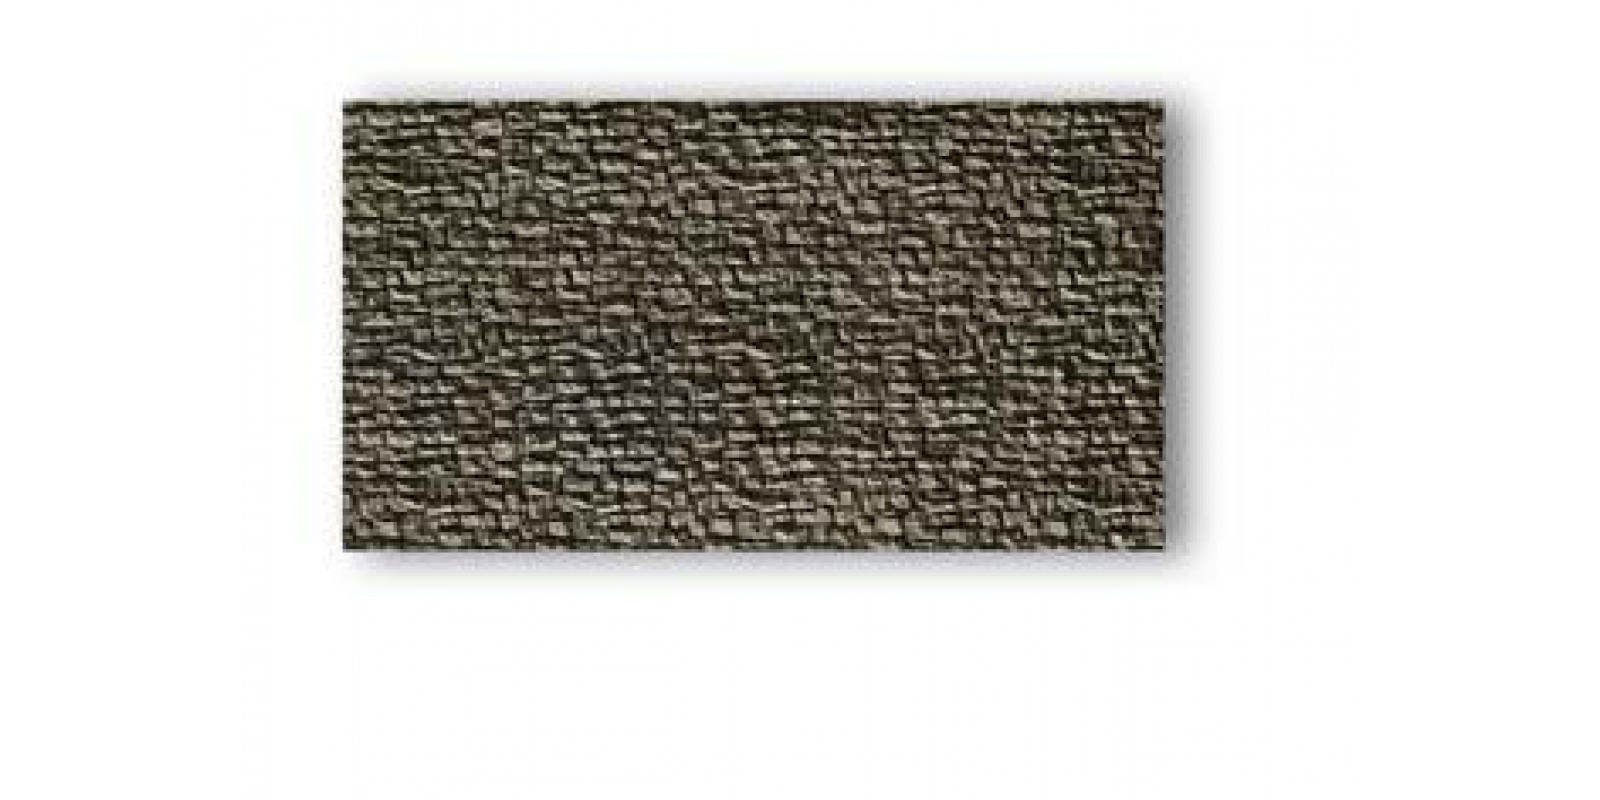  No58250 Quarrystone Wall, 23.5 x 12.5 cm